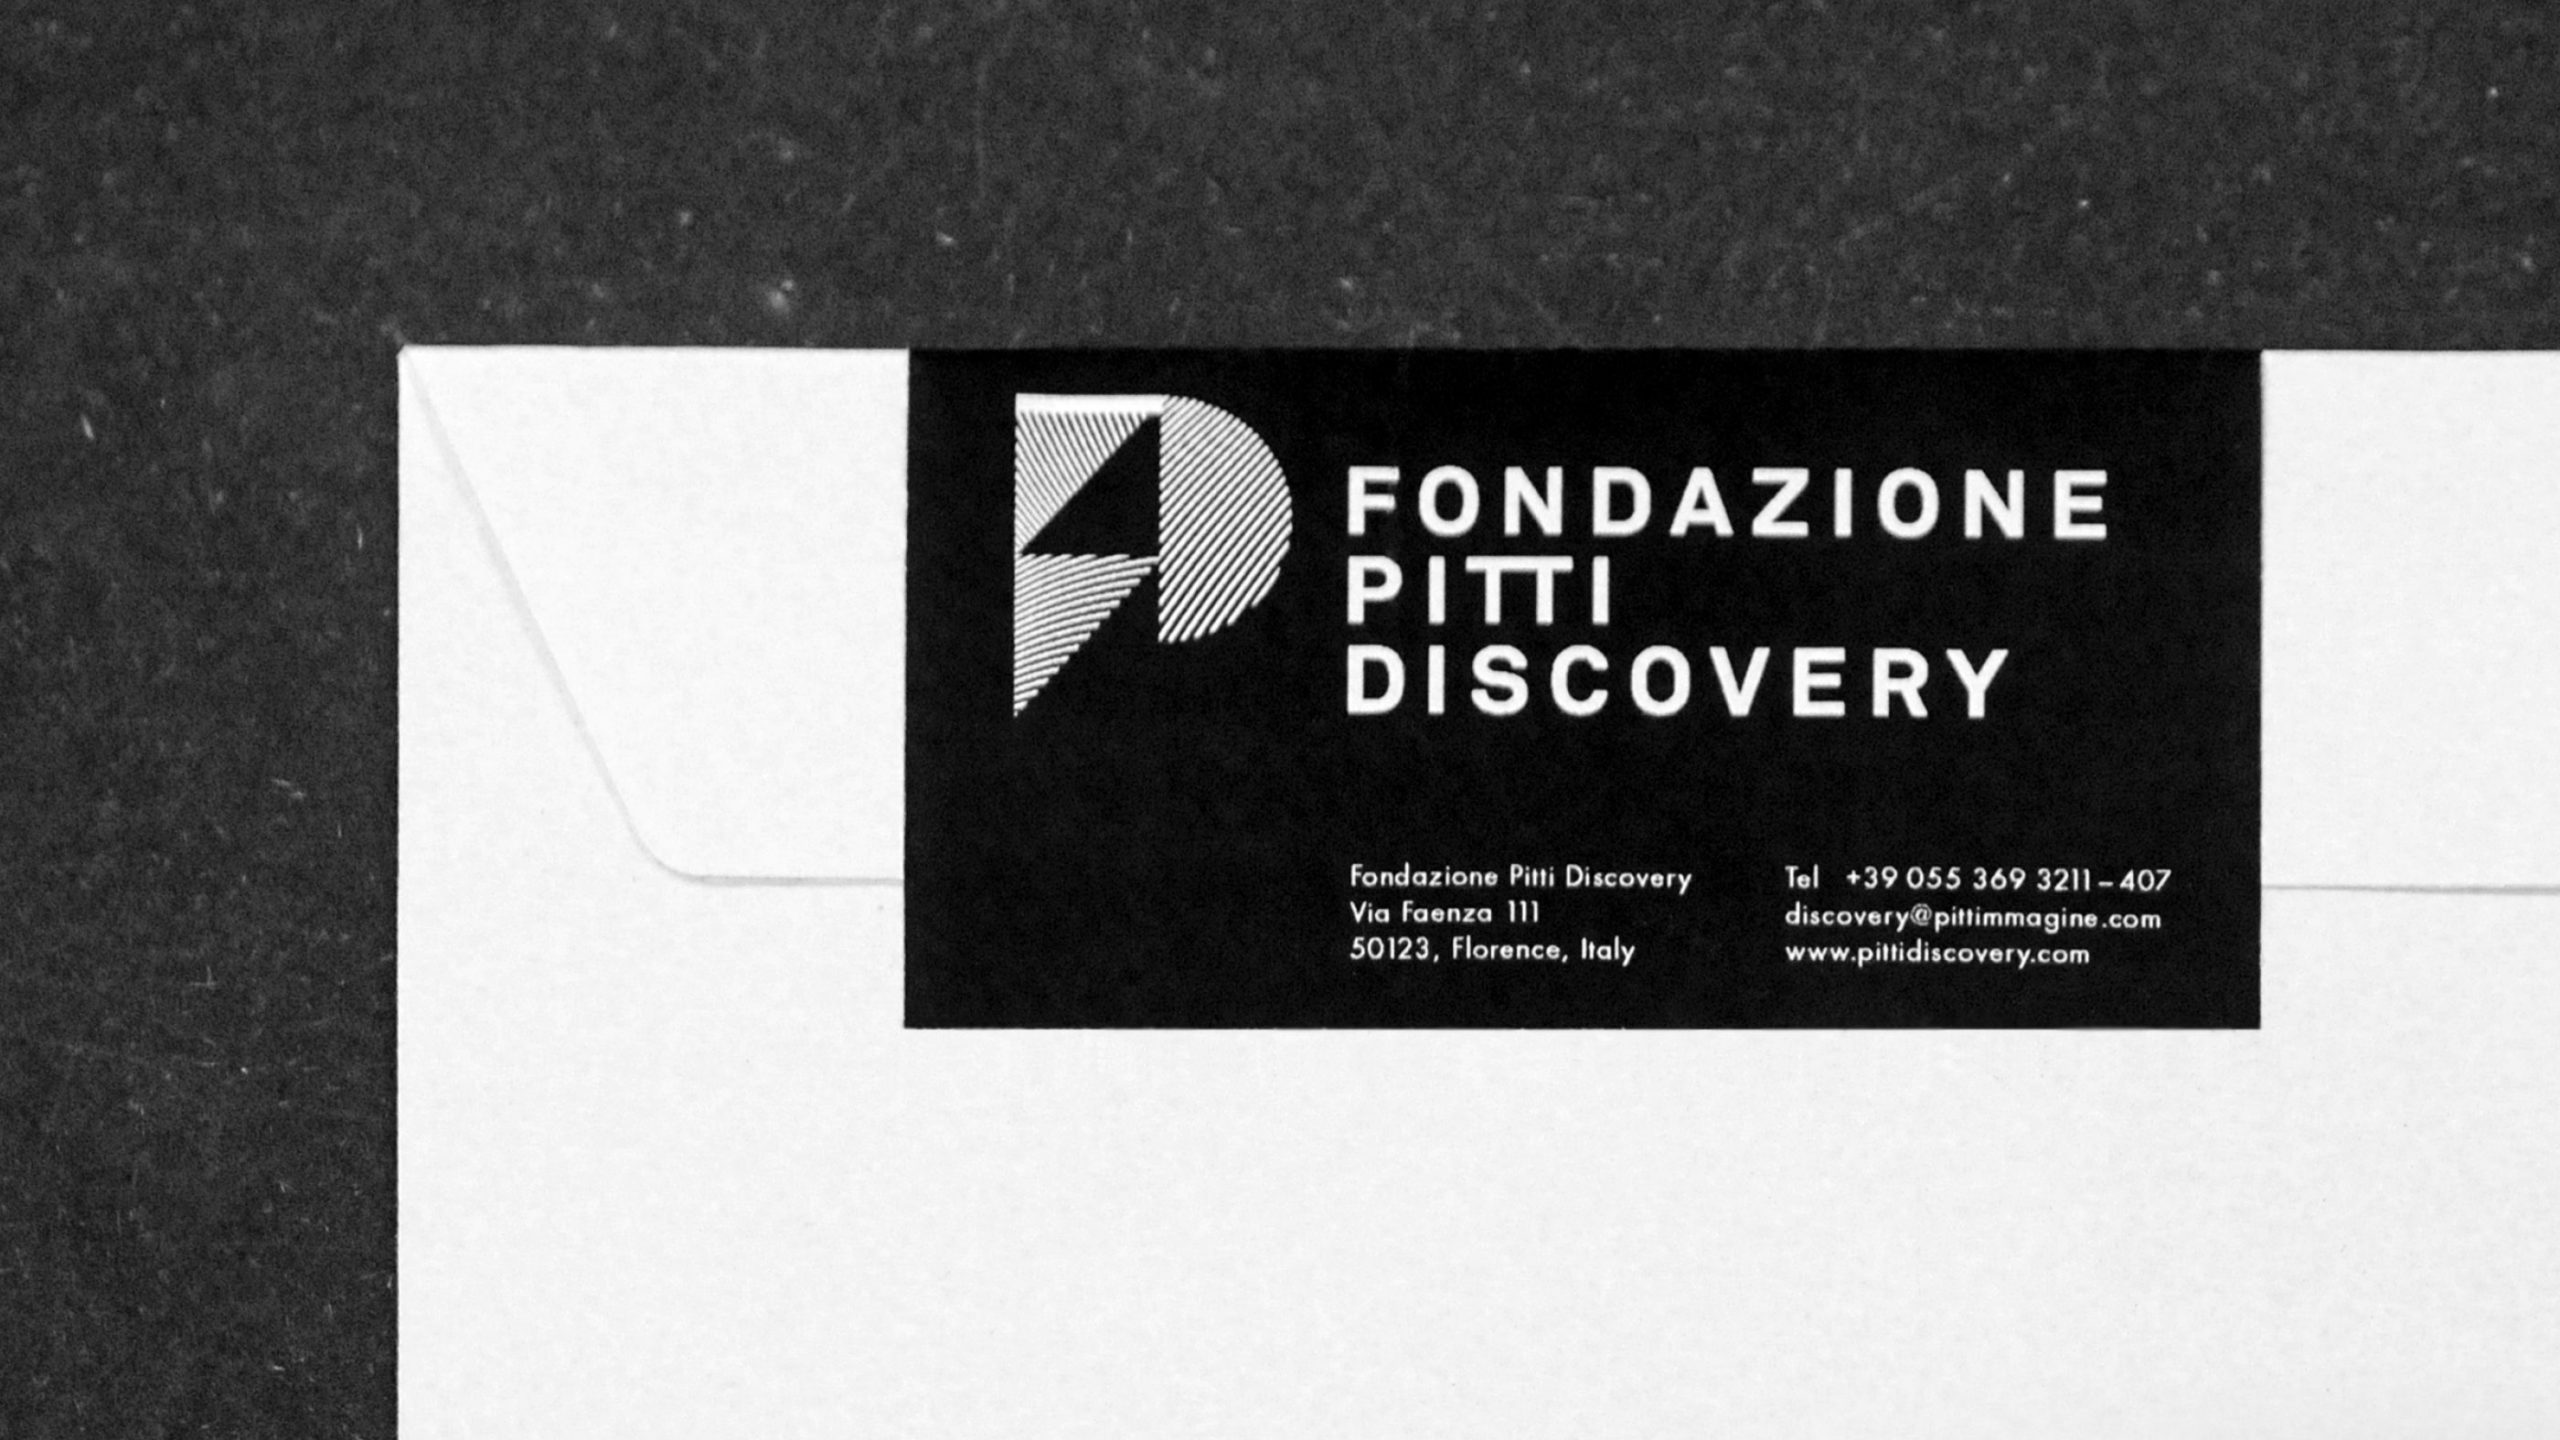 Fondazione Pitti Discovery